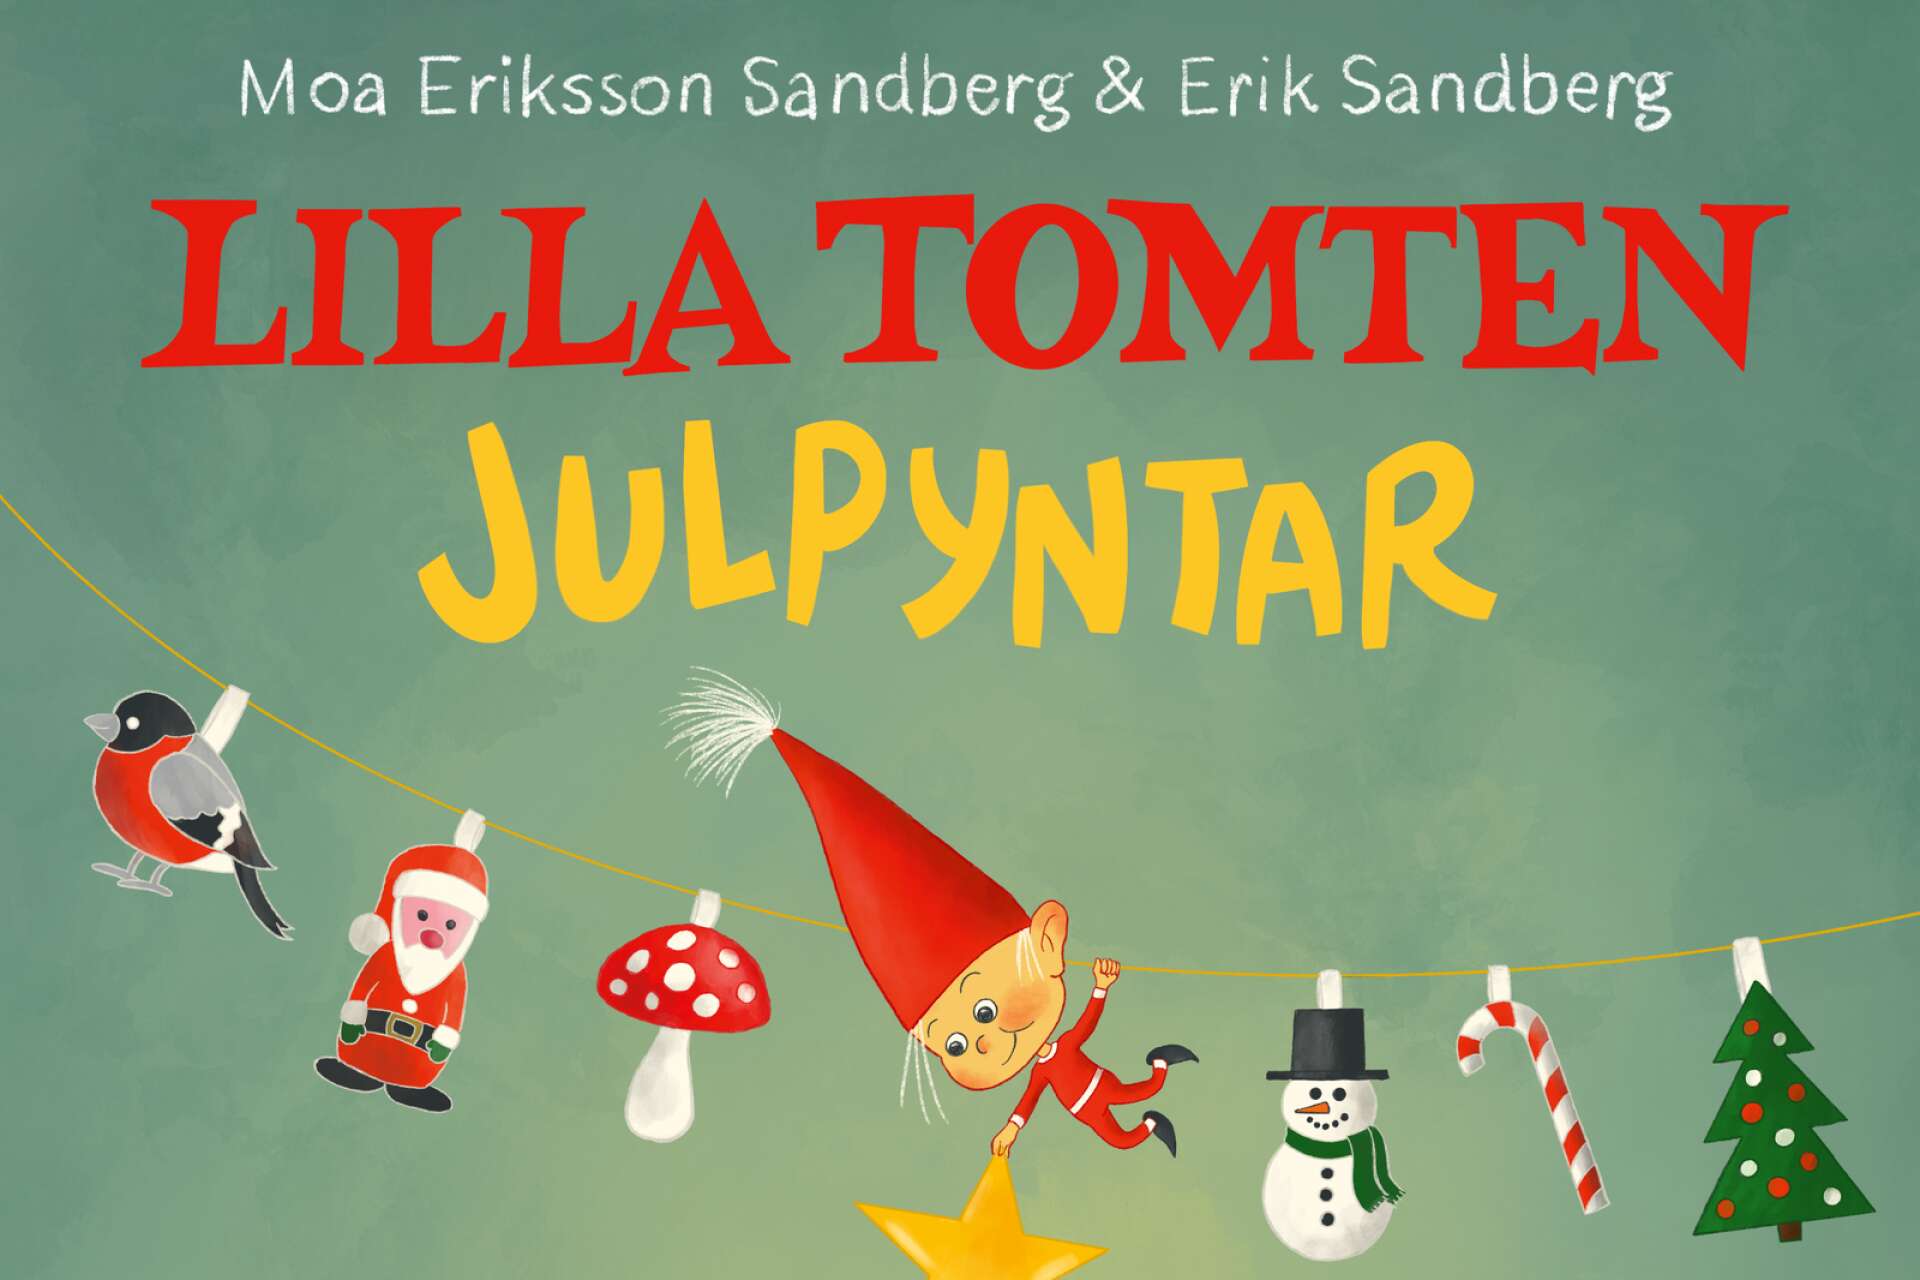 En liten tomte har fullt sjå inför julen i Moa Eriksson Sandberg (text) och Erik Sandbergs (bild) bok Lilla tomten julpyntar.